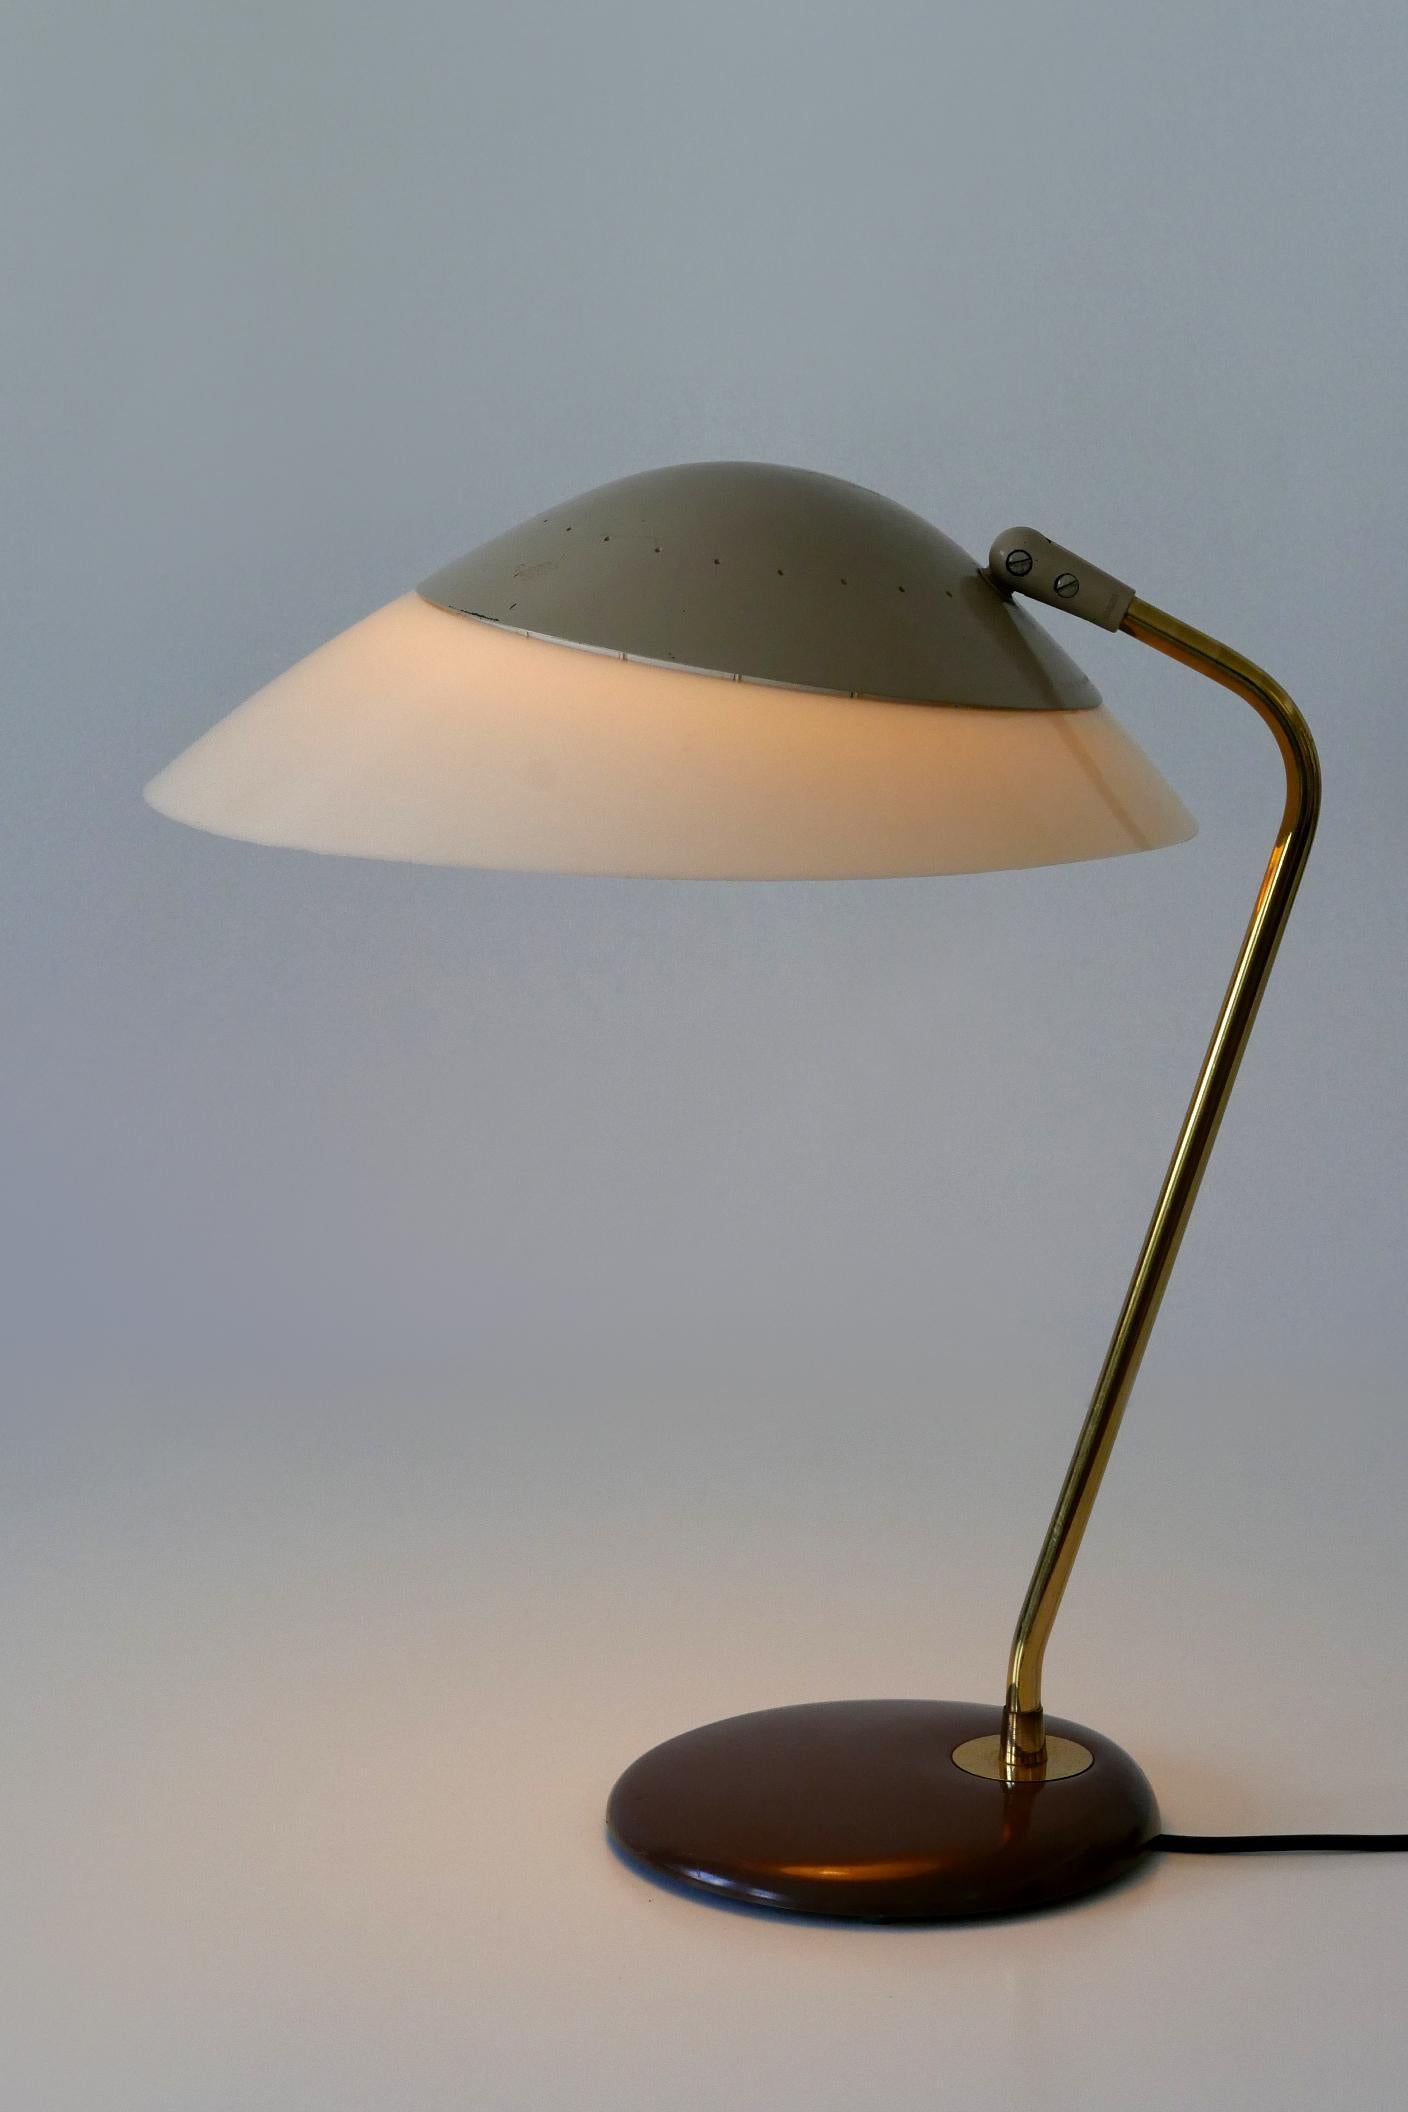 Elégante lampe de table ou de bureau de style moderne du milieu du siècle. Conçu par Gerald Thurston pour Lightolier, États-Unis, années 1950.

Réalisée en laiton, aluminium, lucite et métal, la lampe de table est livrée avec 1 douille d'ampoule à